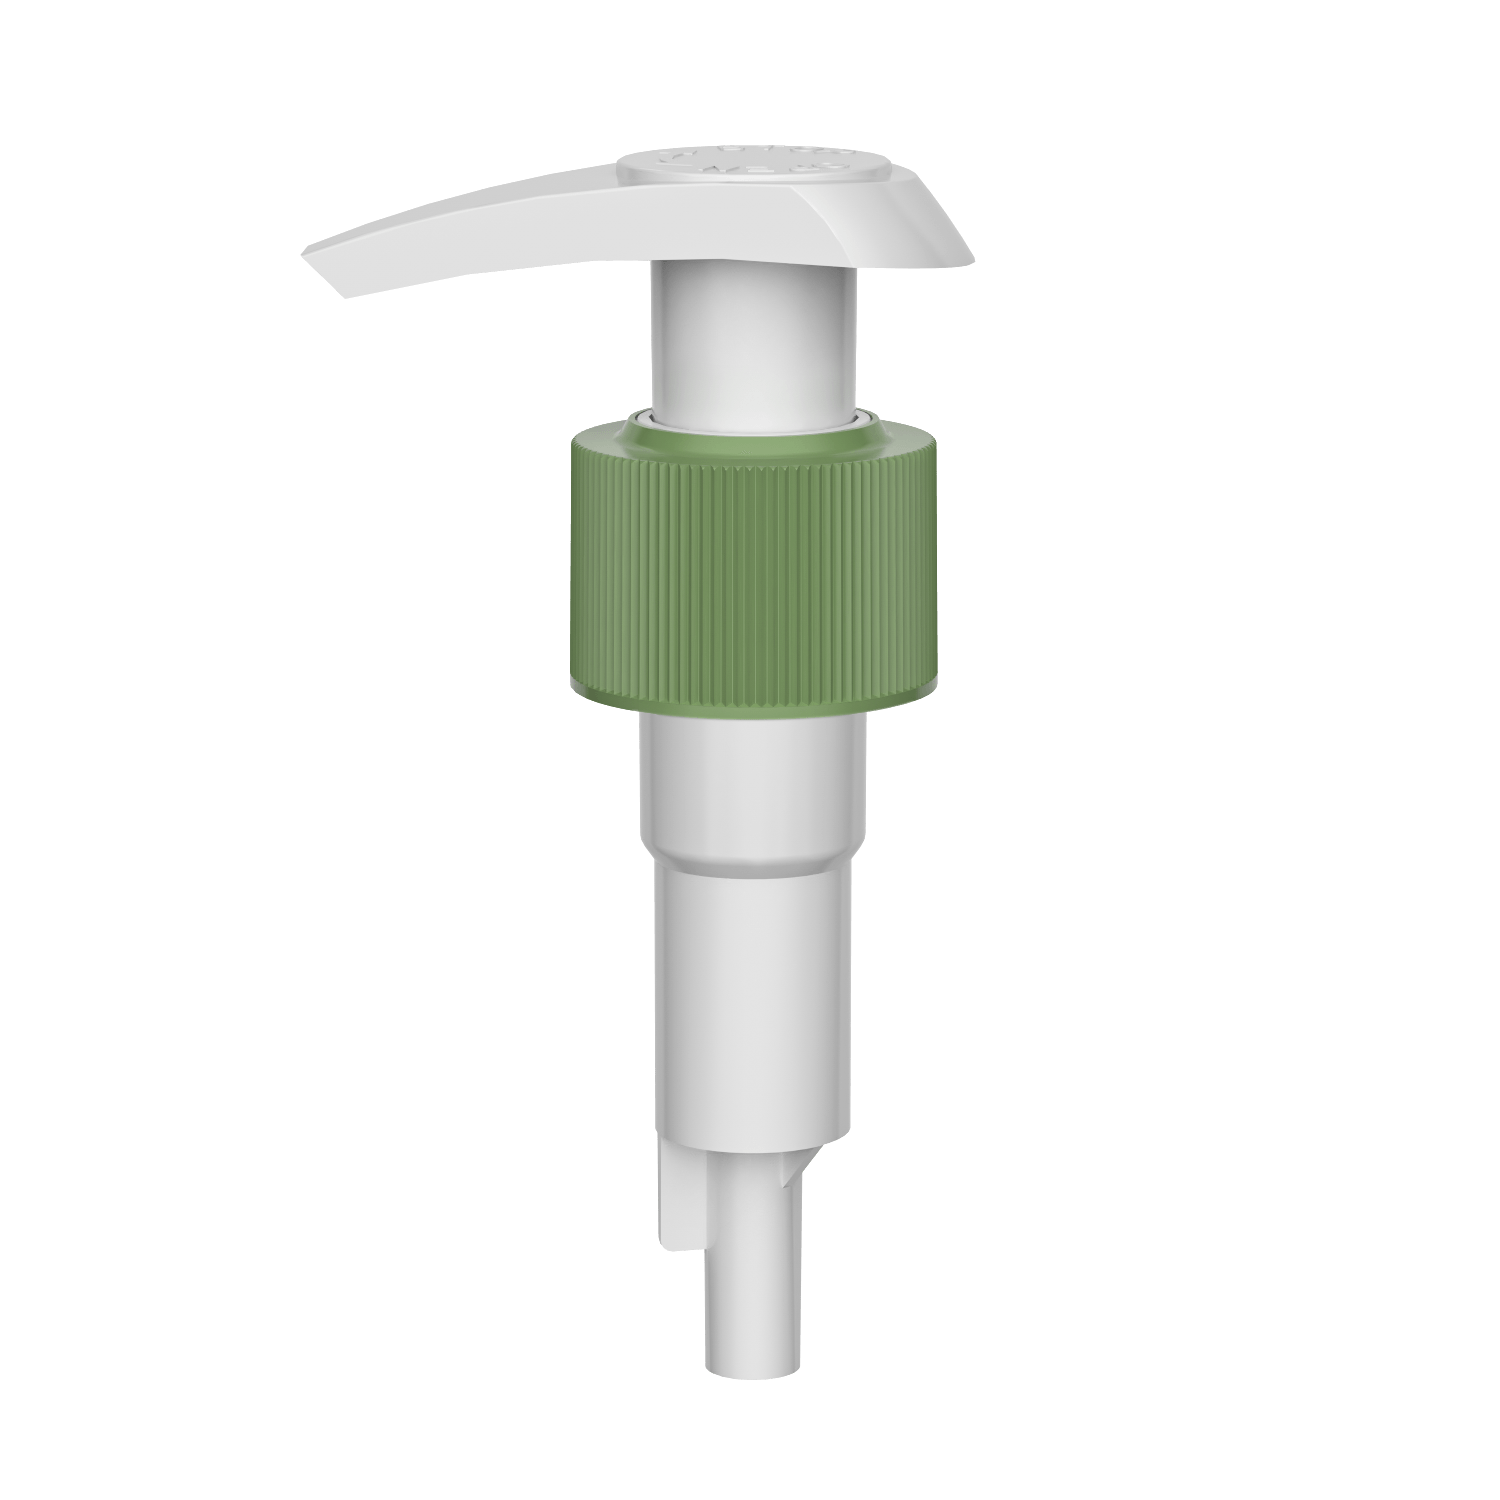 HD-601B 24/410 pompe à lotion 1.9-2.1ML de distributeur de savon liquide à ressort extérieur externe